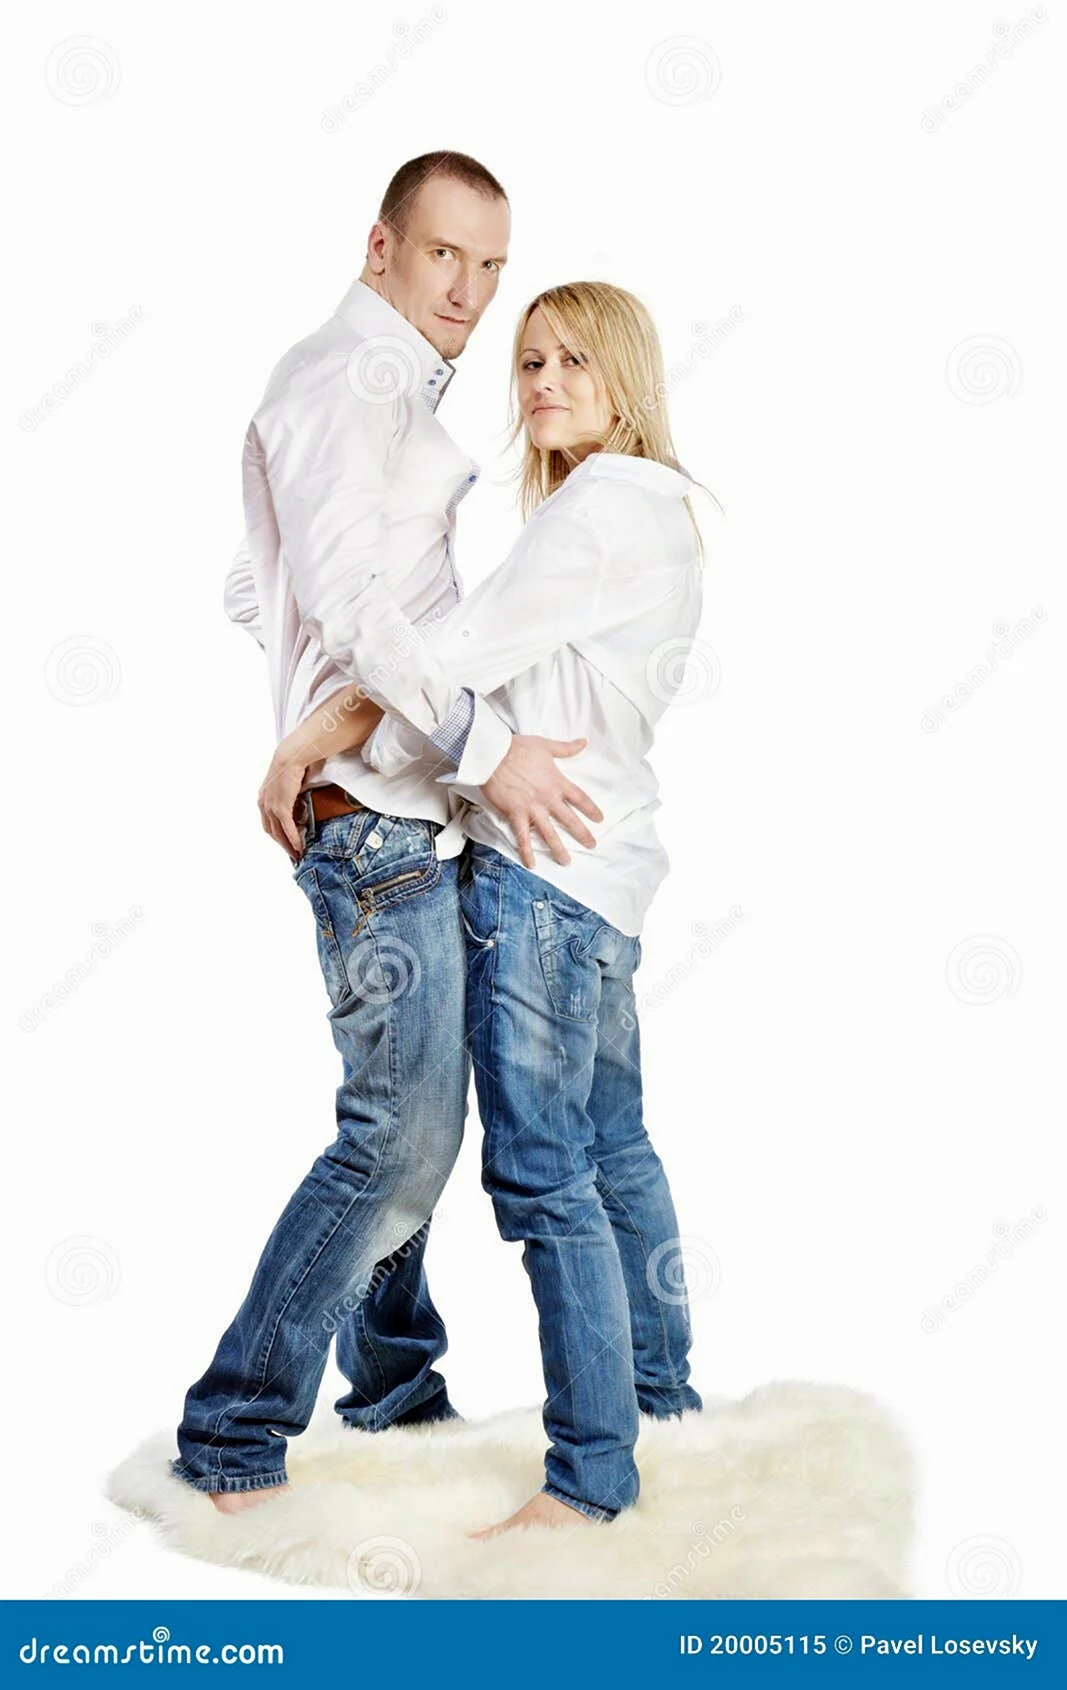 Фотосессия в белых рубашках и джинсах семейная